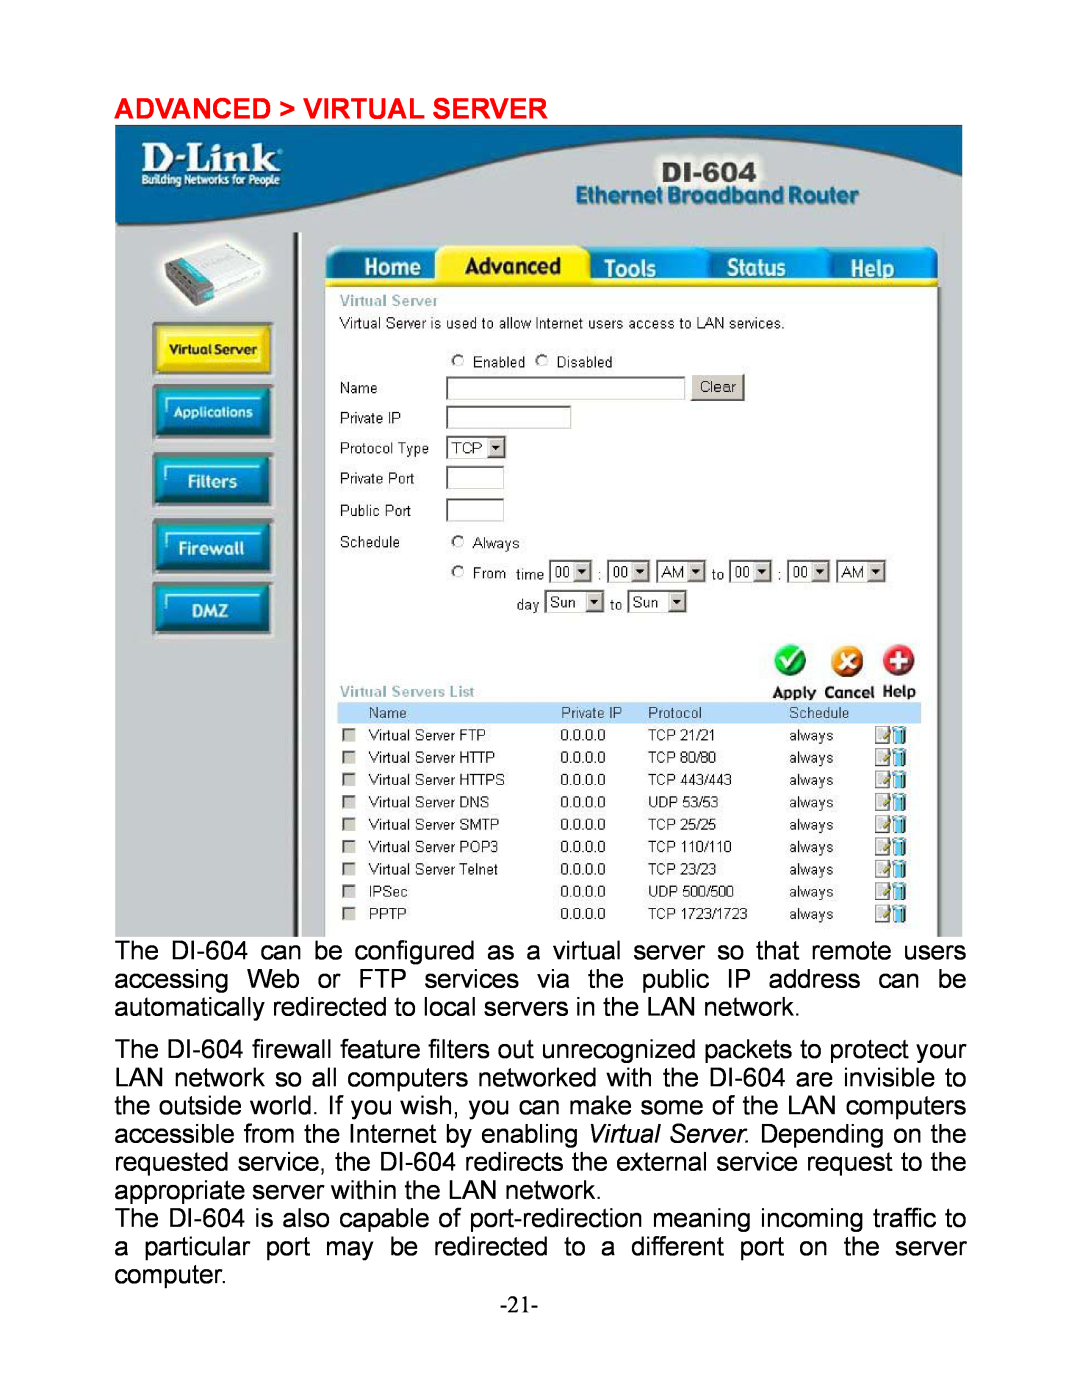 D-Link DI-604 manual Advanced Virtual Server 